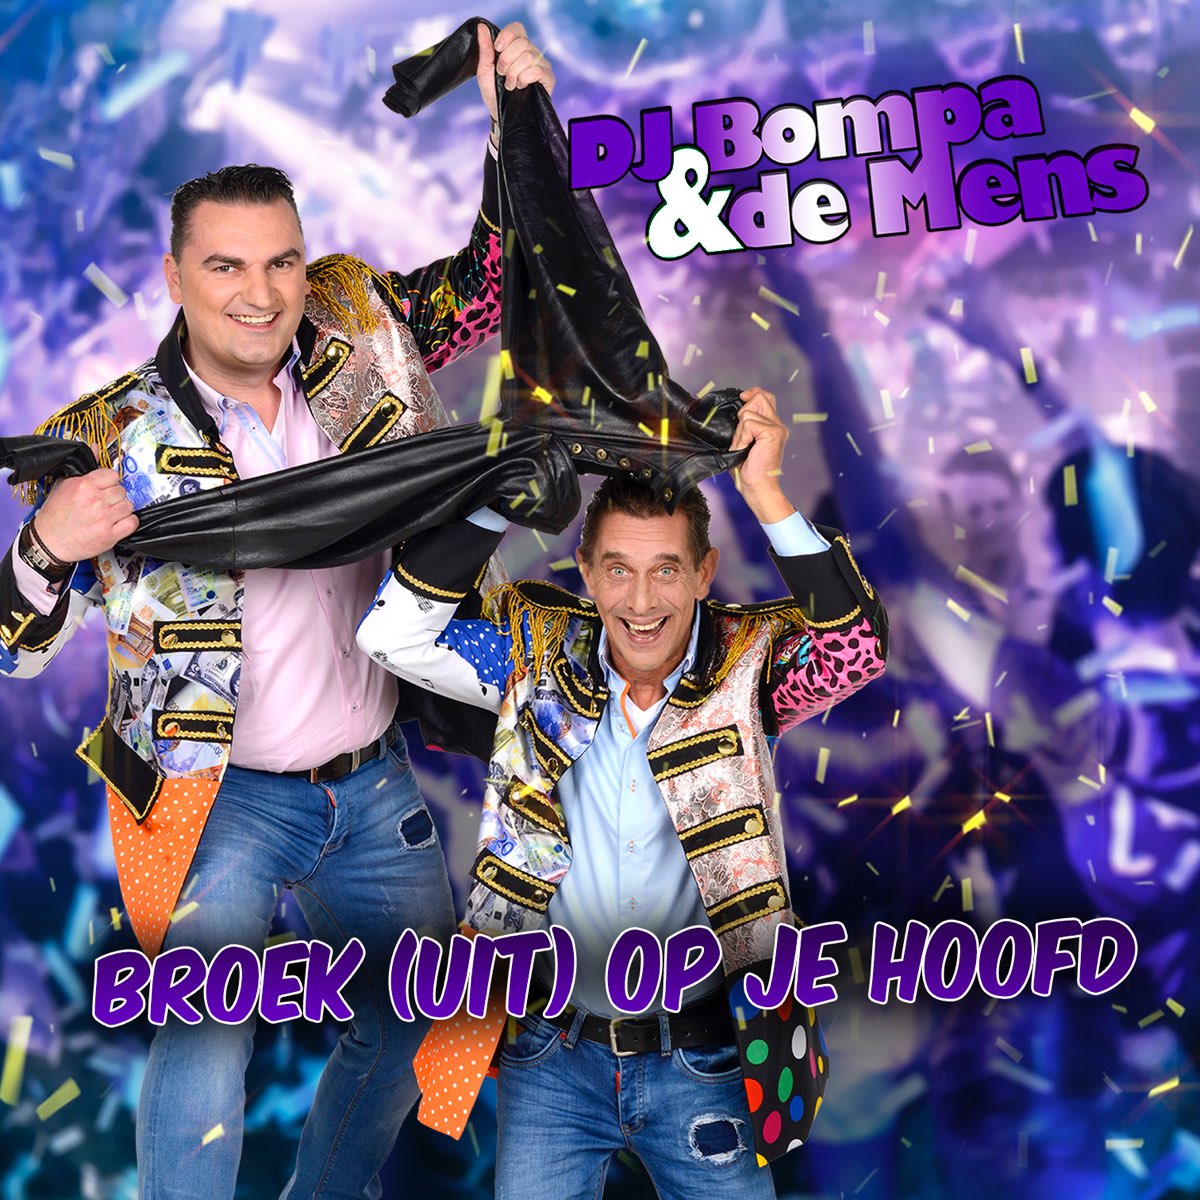 Broek (Uit) Op Je Hoofd - Single by DJ Bompa & De Mens on Apple Music